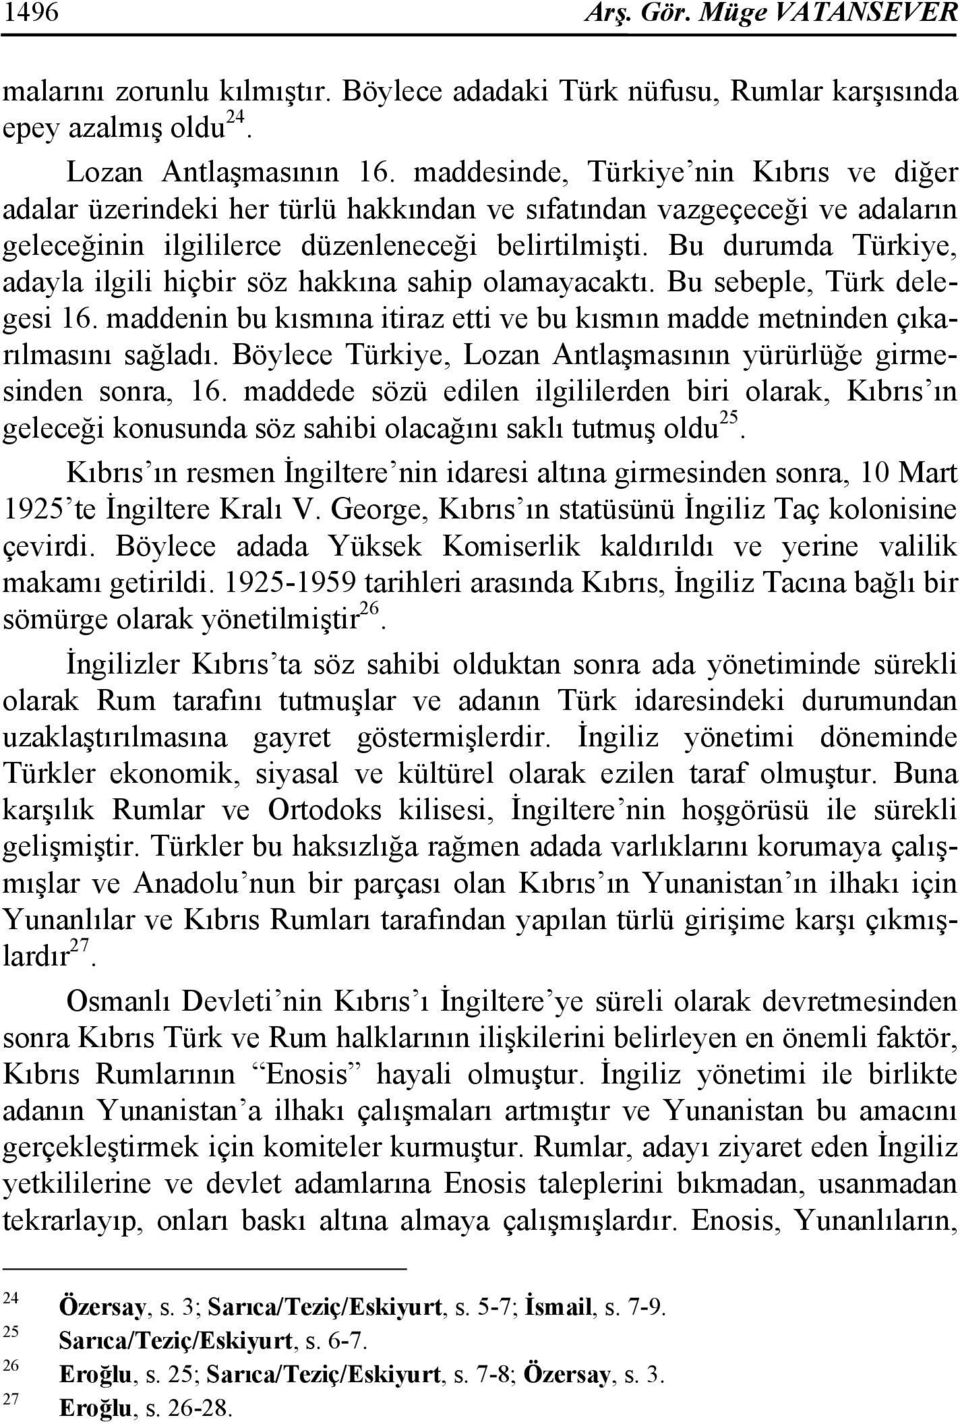 Bu durumda Türkiye, adayla ilgili hiçbir söz hakkına sahip olamayacaktı. Bu sebeple, Türk delegesi 16. maddenin bu kısmına itiraz etti ve bu kısmın madde metninden çıkarılmasını sağladı.